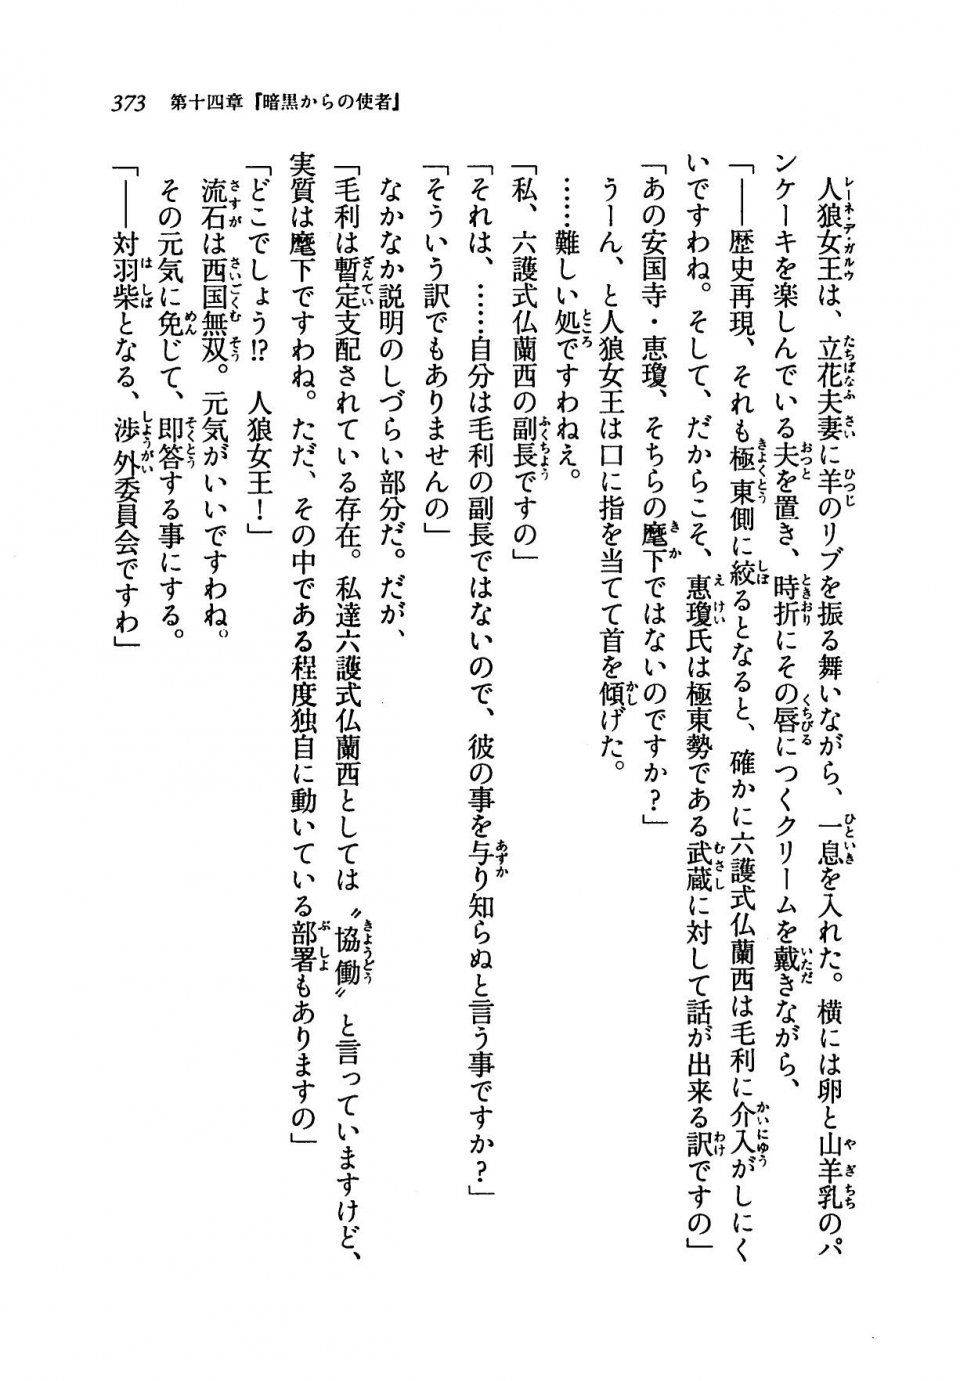 Kyoukai Senjou no Horizon LN Vol 19(8A) - Photo #373